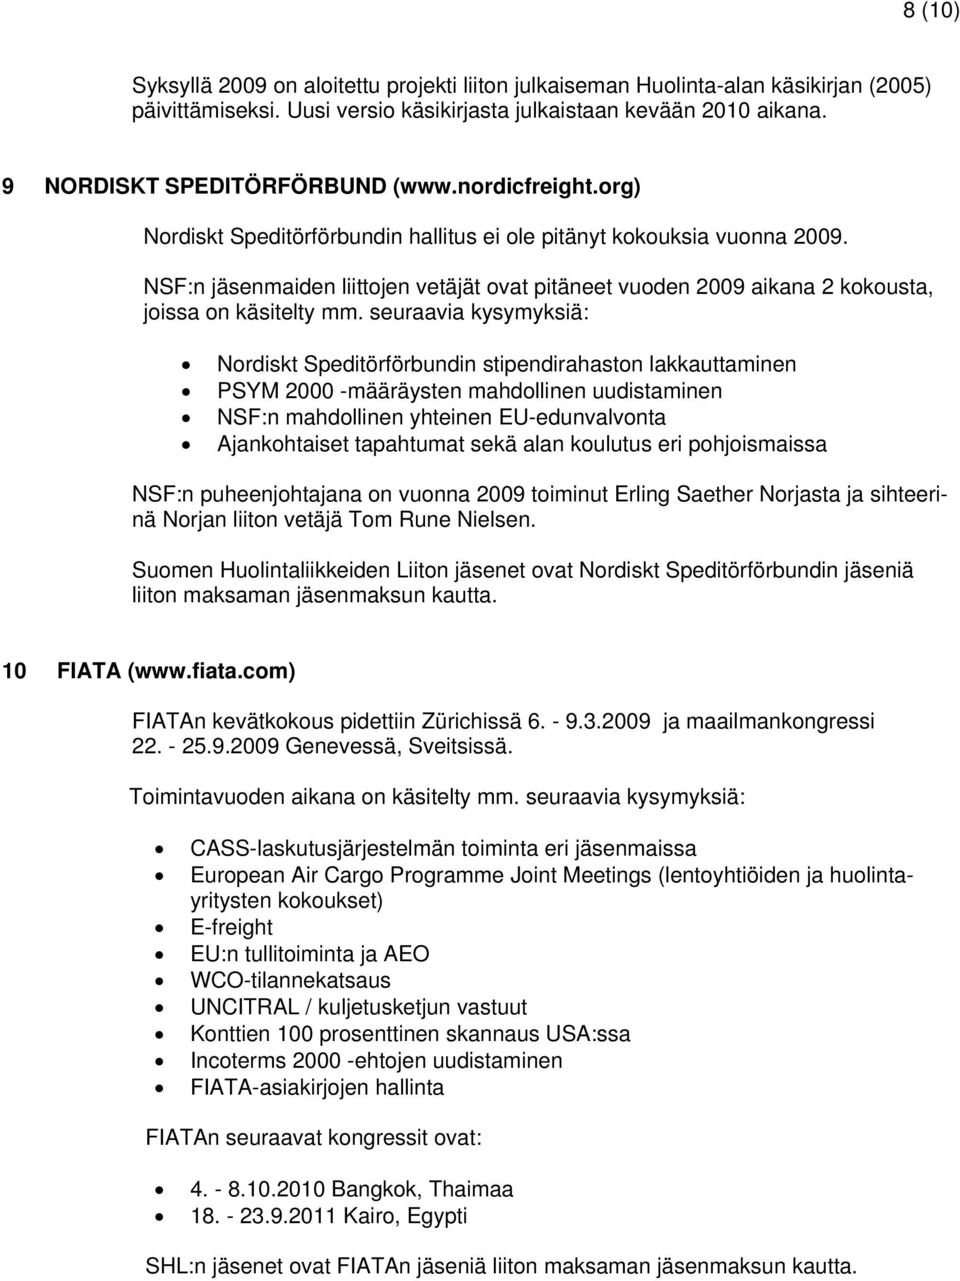 seuraavia kysymyksiä: Nordiskt Speditörförbundin stipendirahaston lakkauttaminen PSYM 2000 -määräysten mahdollinen uudistaminen NSF:n mahdollinen yhteinen EU-edunvalvonta Ajankohtaiset tapahtumat